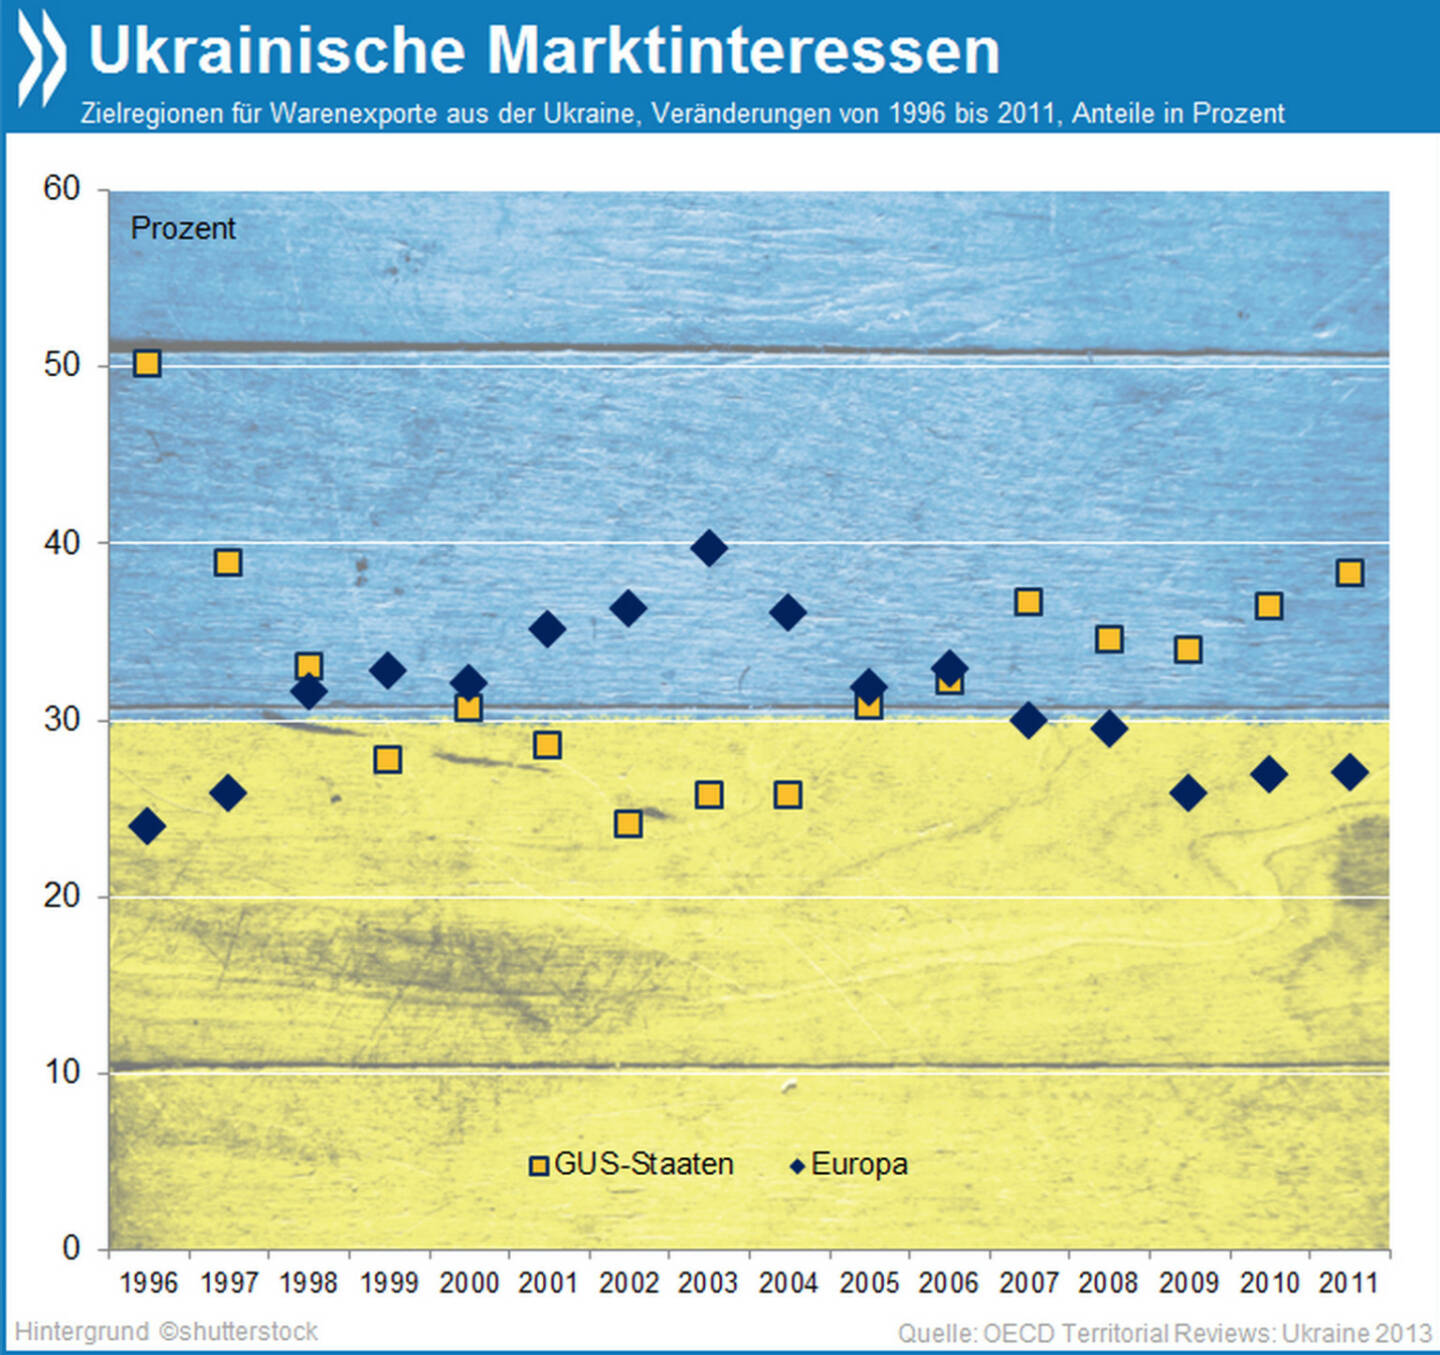 Marktinteressen: Fast ein Drittel aller ukrainischen Exporte landet in Europa, die Tendenz ist aber fallend. Seit 2006 sind die GUS-Länder (einschließlich Russland) wieder wichtigster Abnehmer ukrainischer Waren.

Mehr Infos unter: http://bit.ly/1i5tkxU (OECD Territorial Reviews: Ukraine, S. 33)